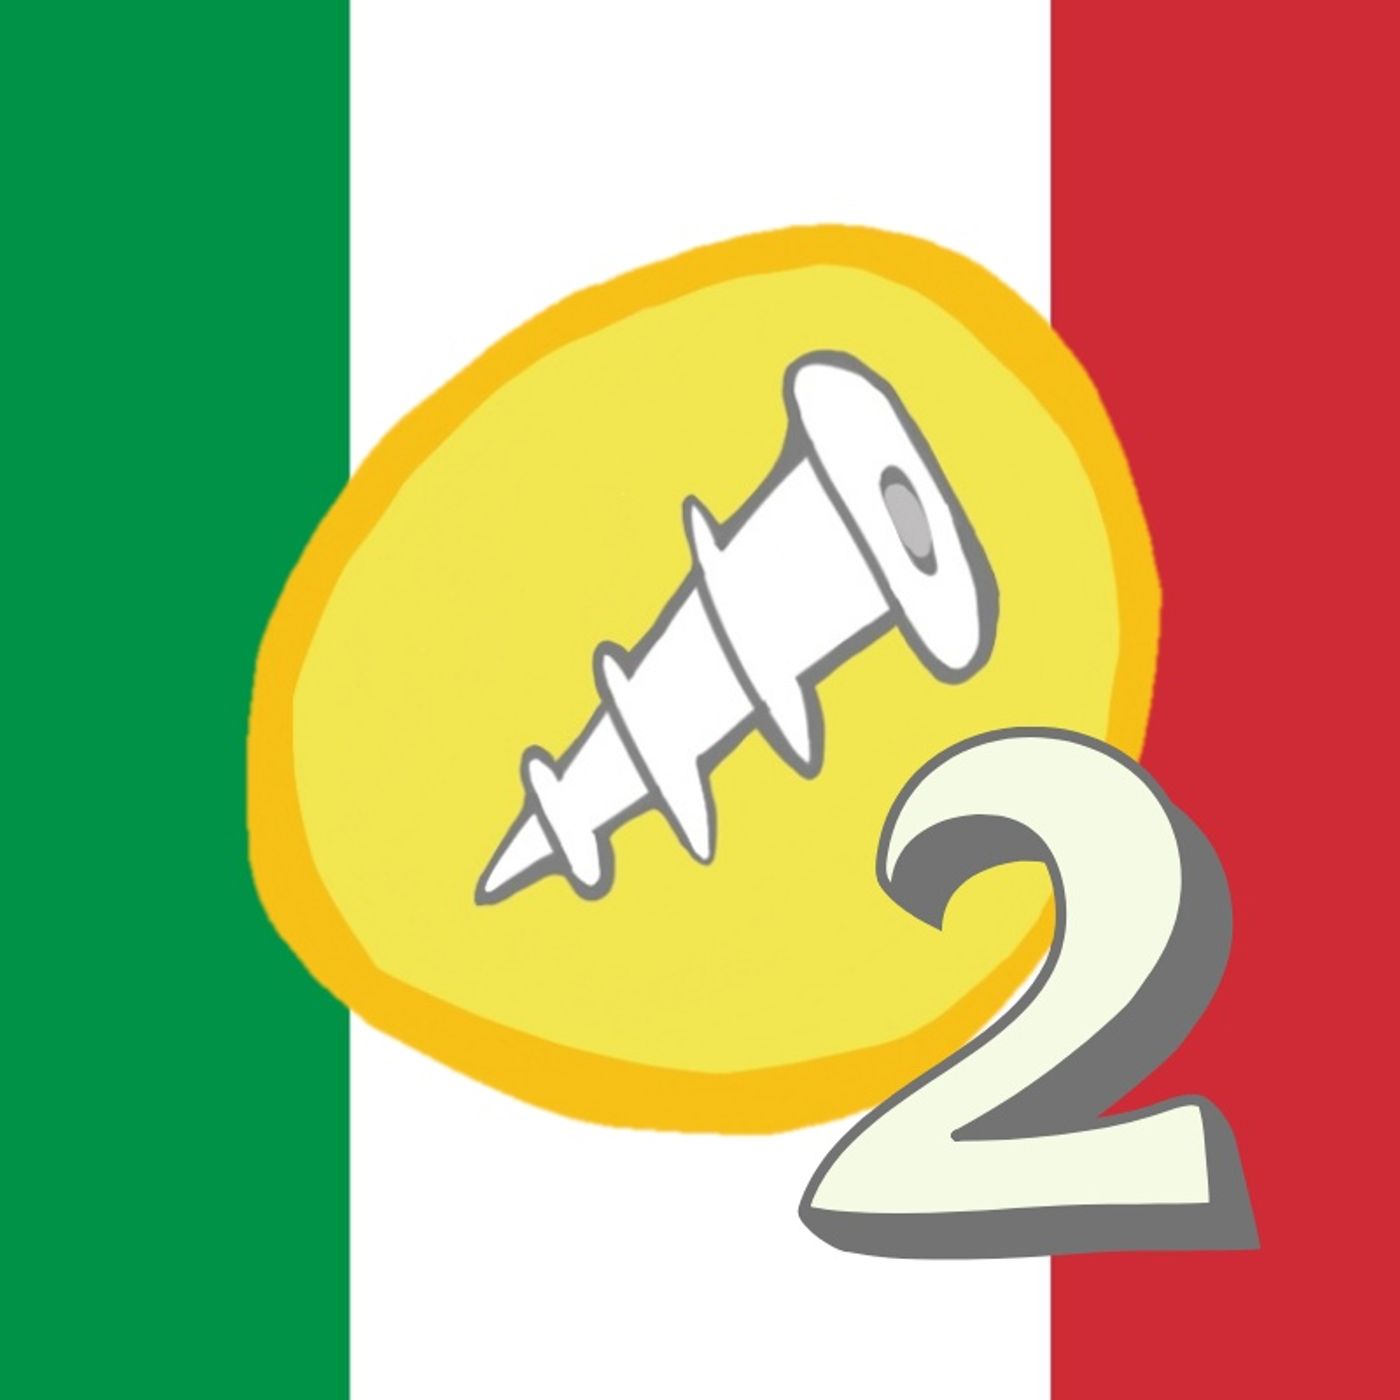 18 - Come l'Italia potrà uscire dalla crisi? Con Storia D'Italia